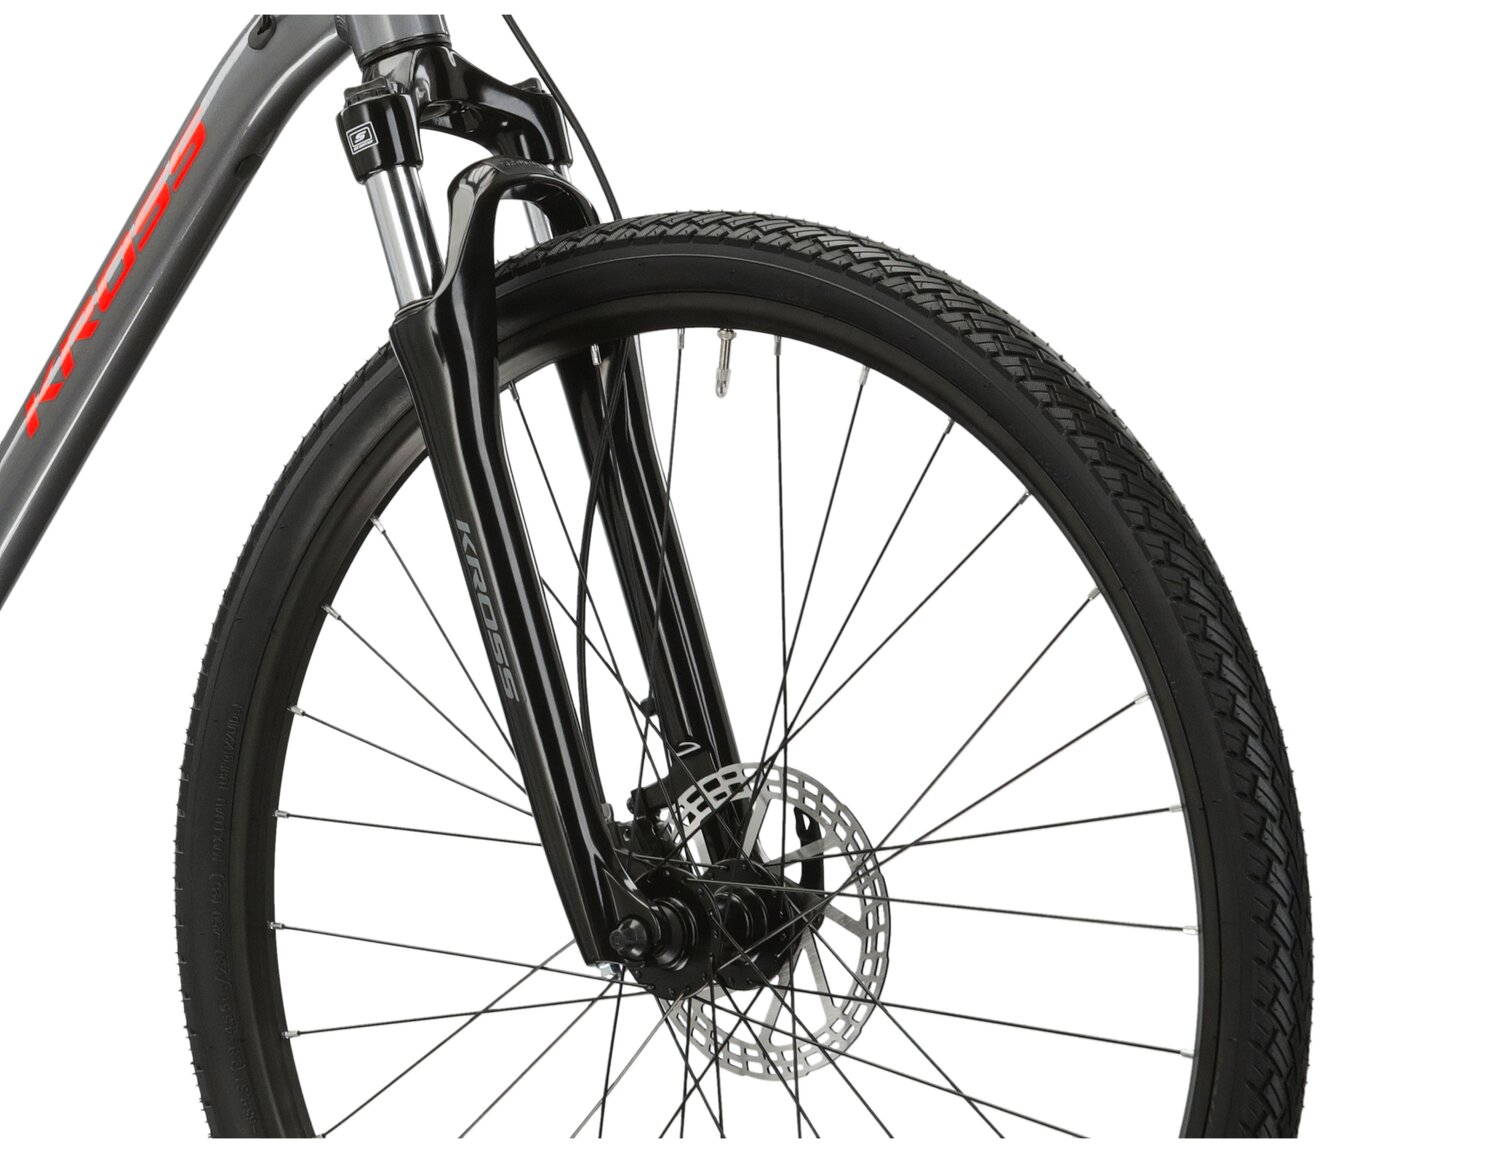  Rama z aluminium 6061, amortyzowany widelec SR Suntour Nex oraz opony WANDA G5001 28X1,75 w rowerze crossowym Kross Evado 4.0 